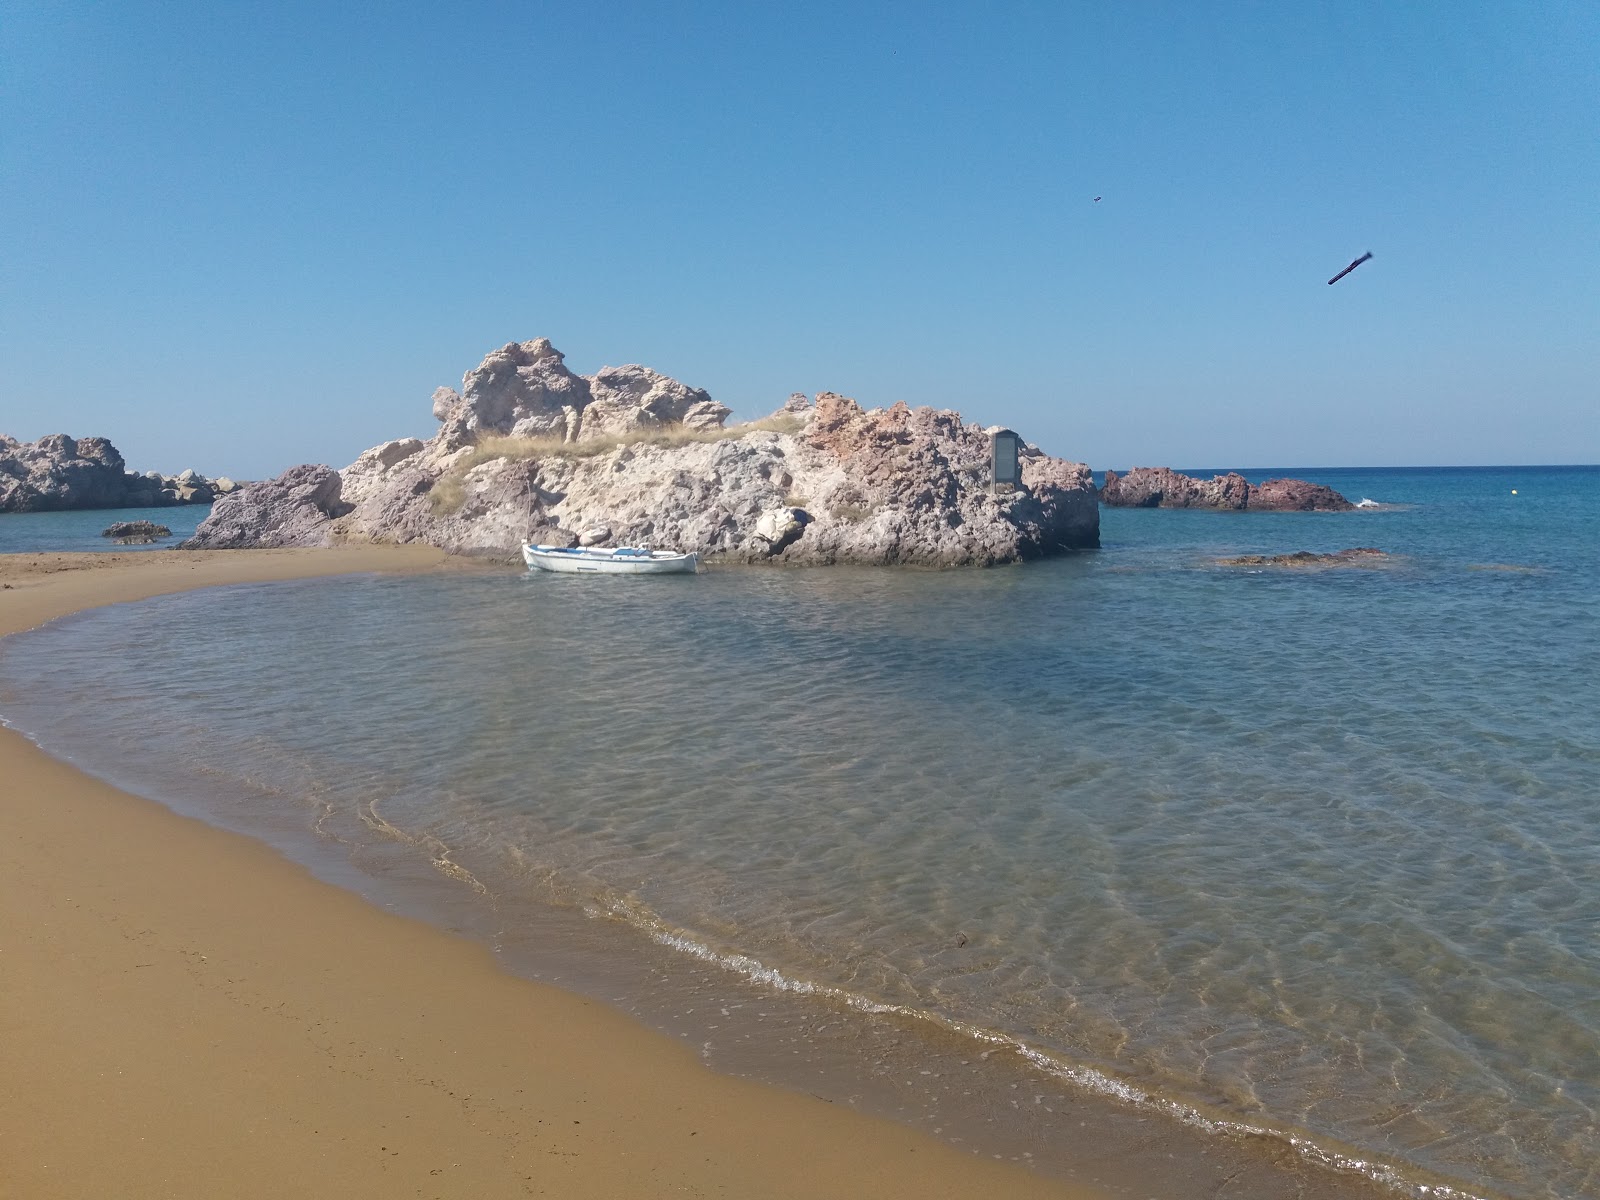 Foto af Agios Ioannis beach - populært sted blandt afslapningskendere